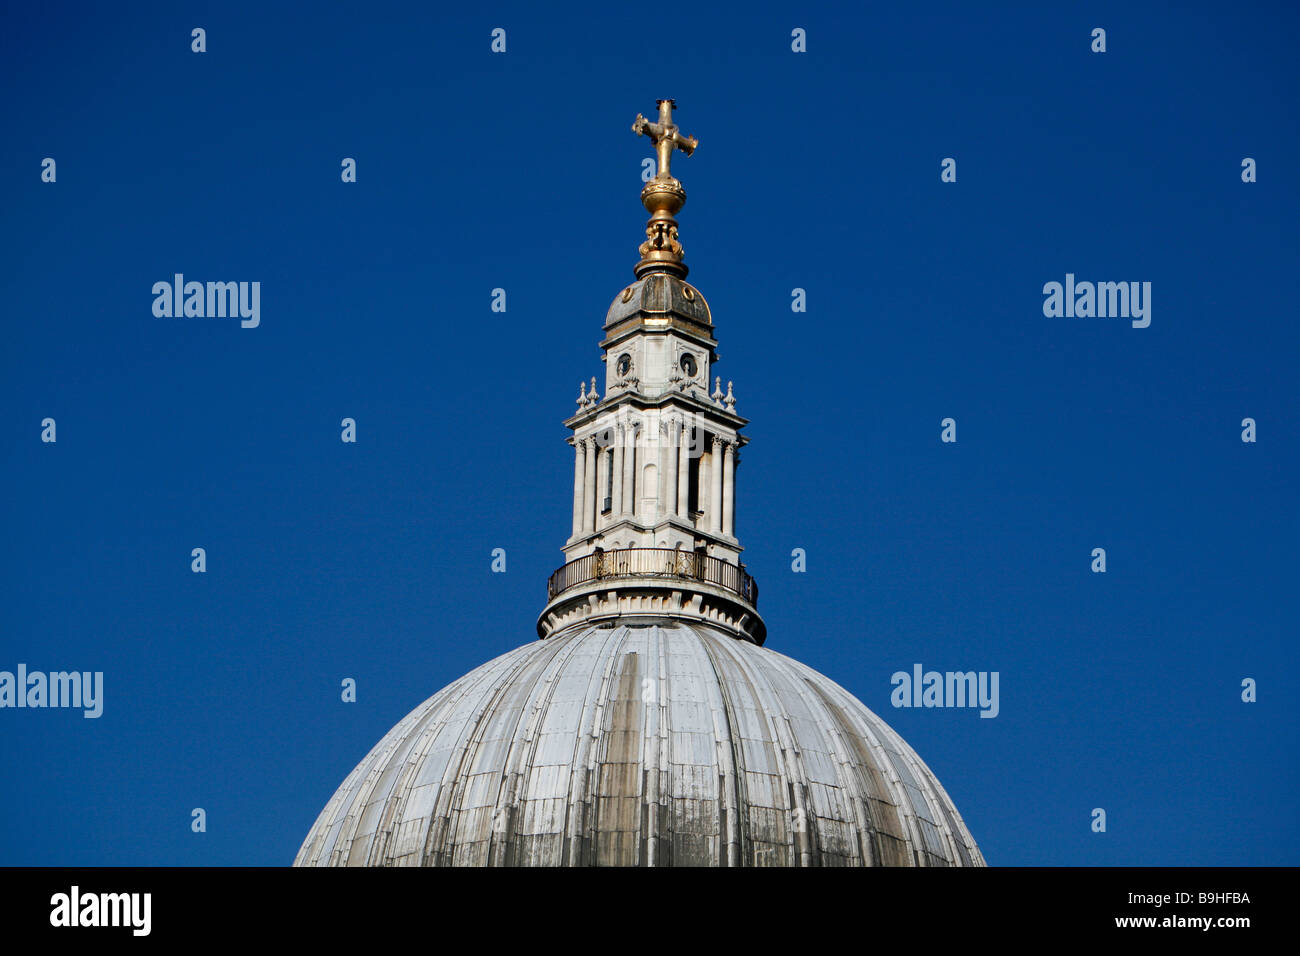 Lanterne et Bal de la Croix et de la galerie dorée sur le haut de la Cathédrale St Paul, la ville de Londres Banque D'Images